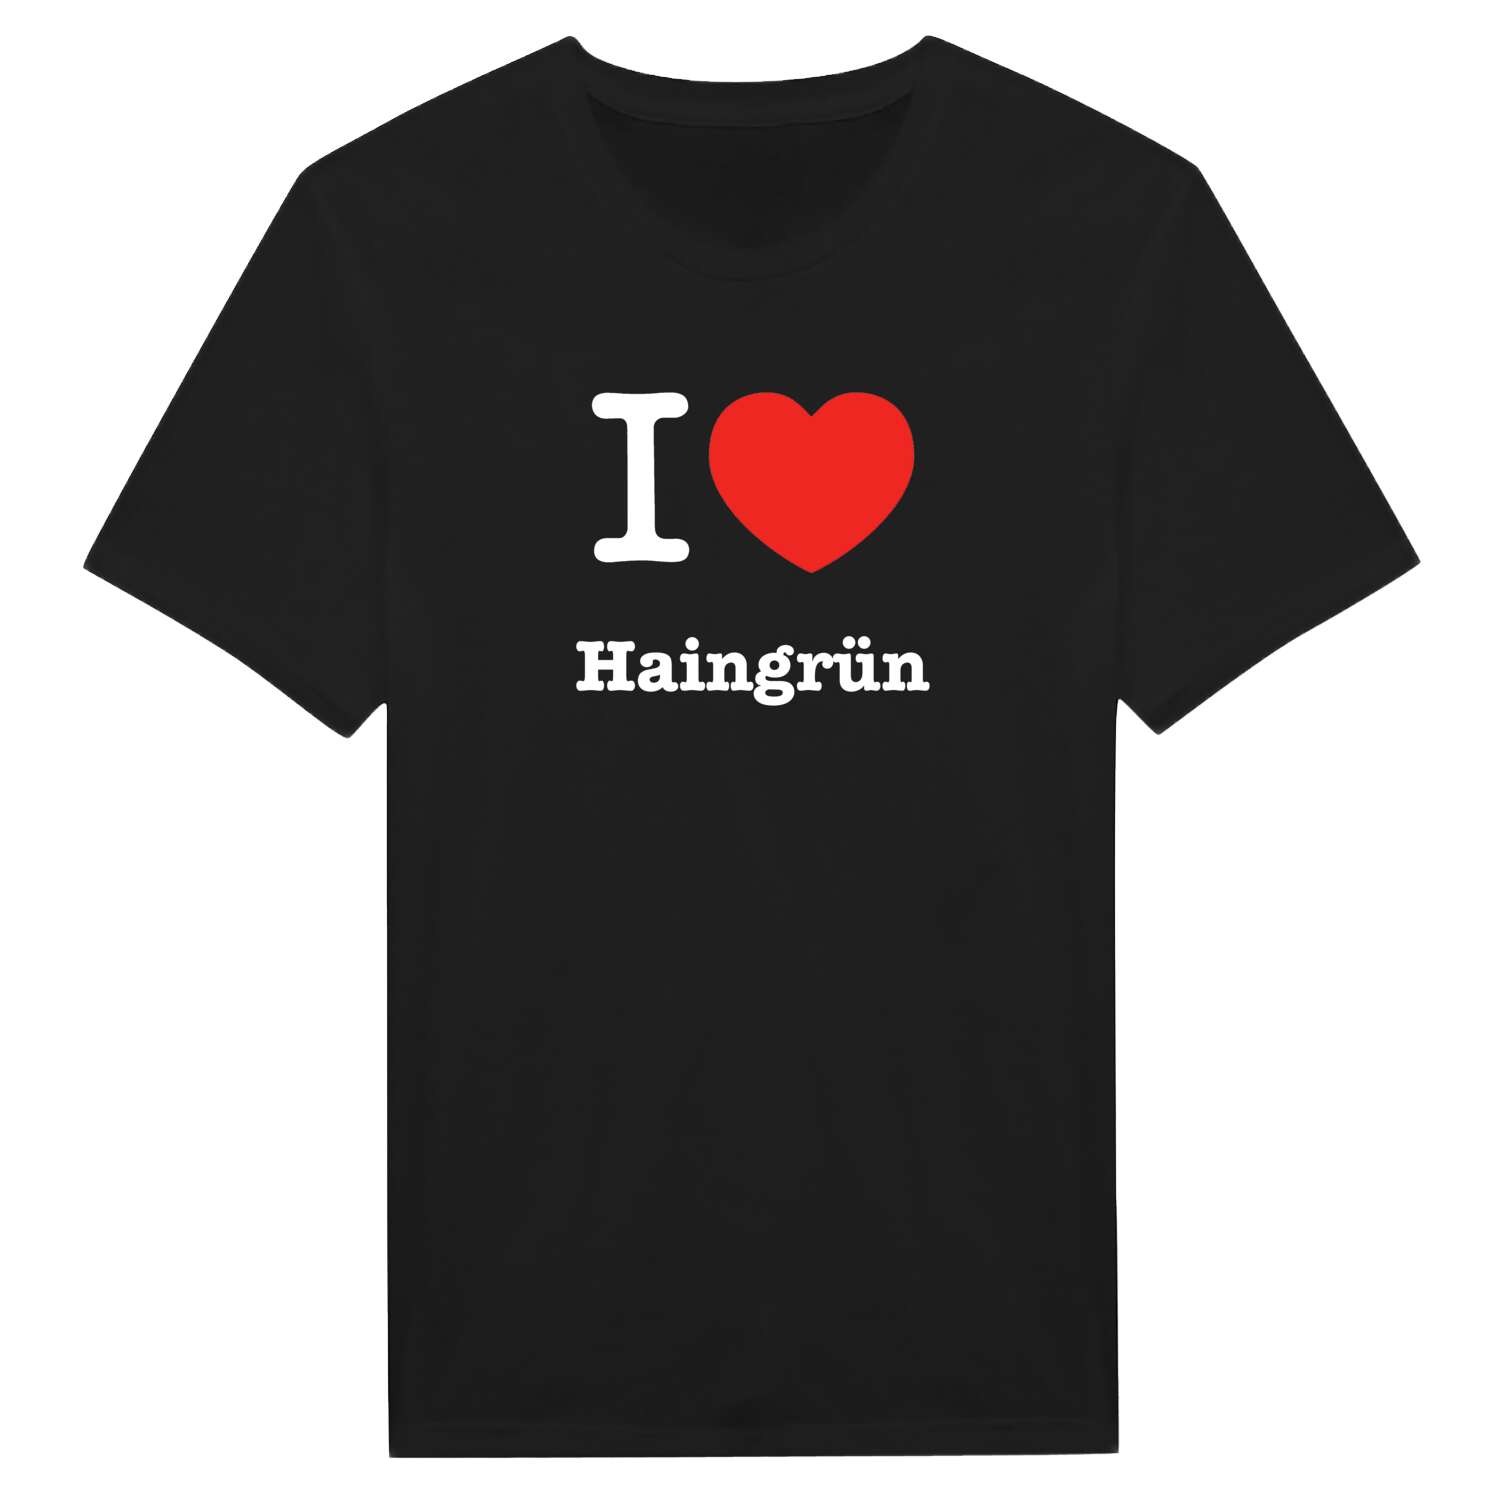 Haingrün T-Shirt »I love«